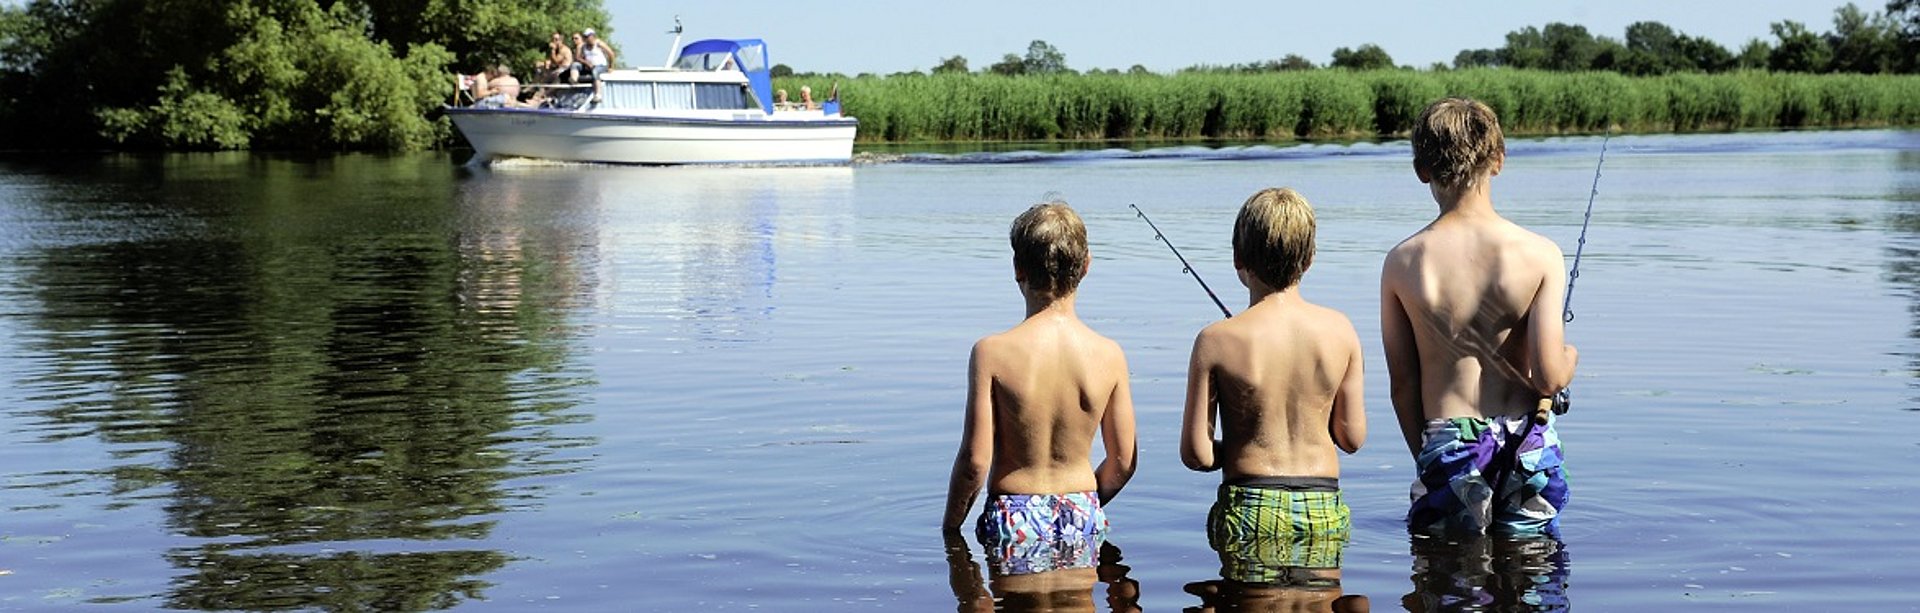 Drei Jungs gehen im Wasser angeln